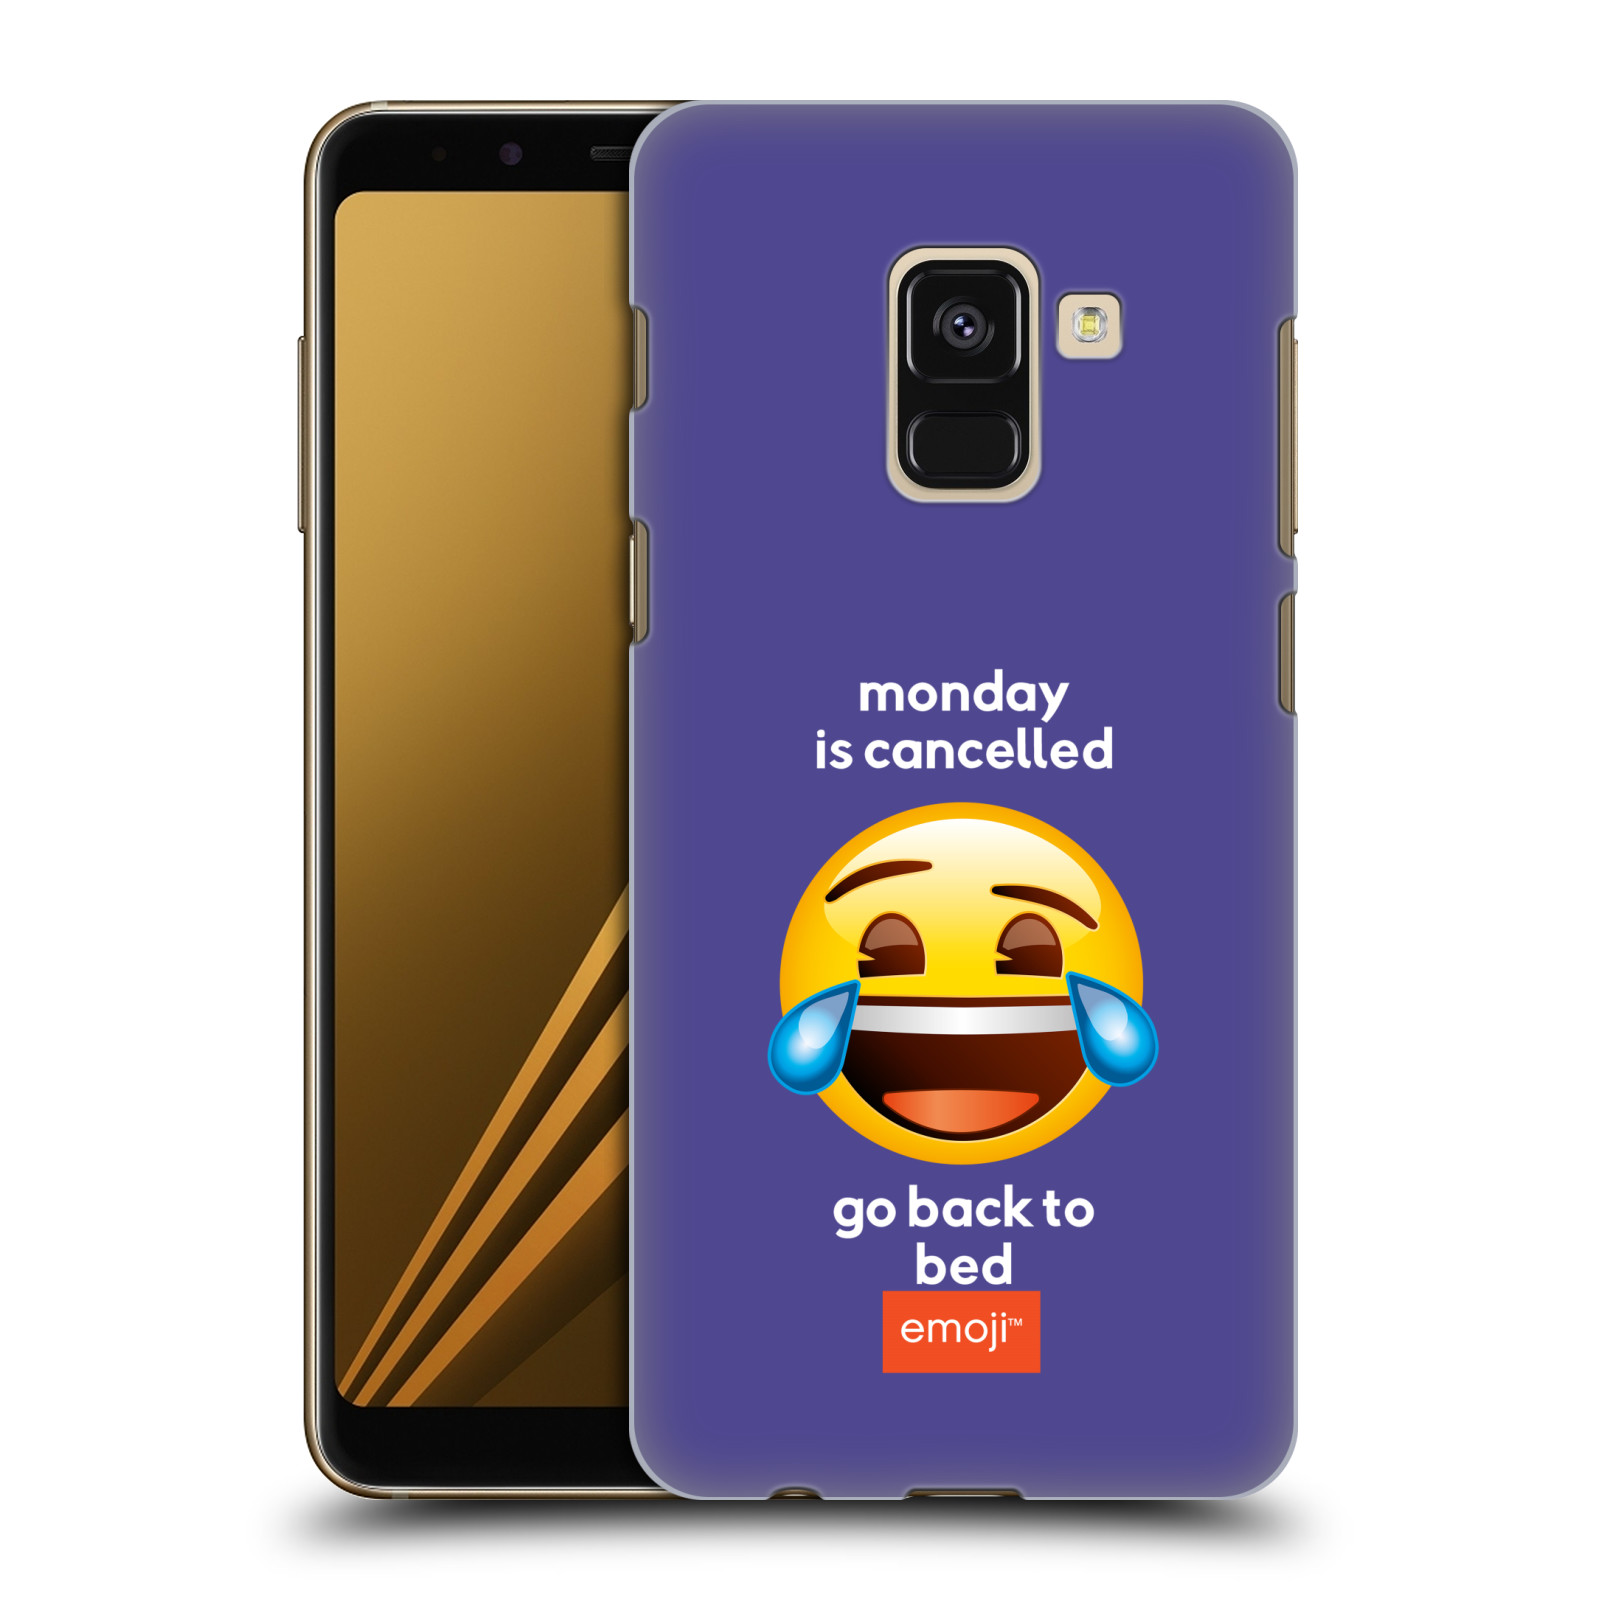 Pouzdro na mobil Samsung Galaxy A8+ 2018, A8 PLUS 2018 - HEAD CASE - Emoji smějící se smajlík pondělí